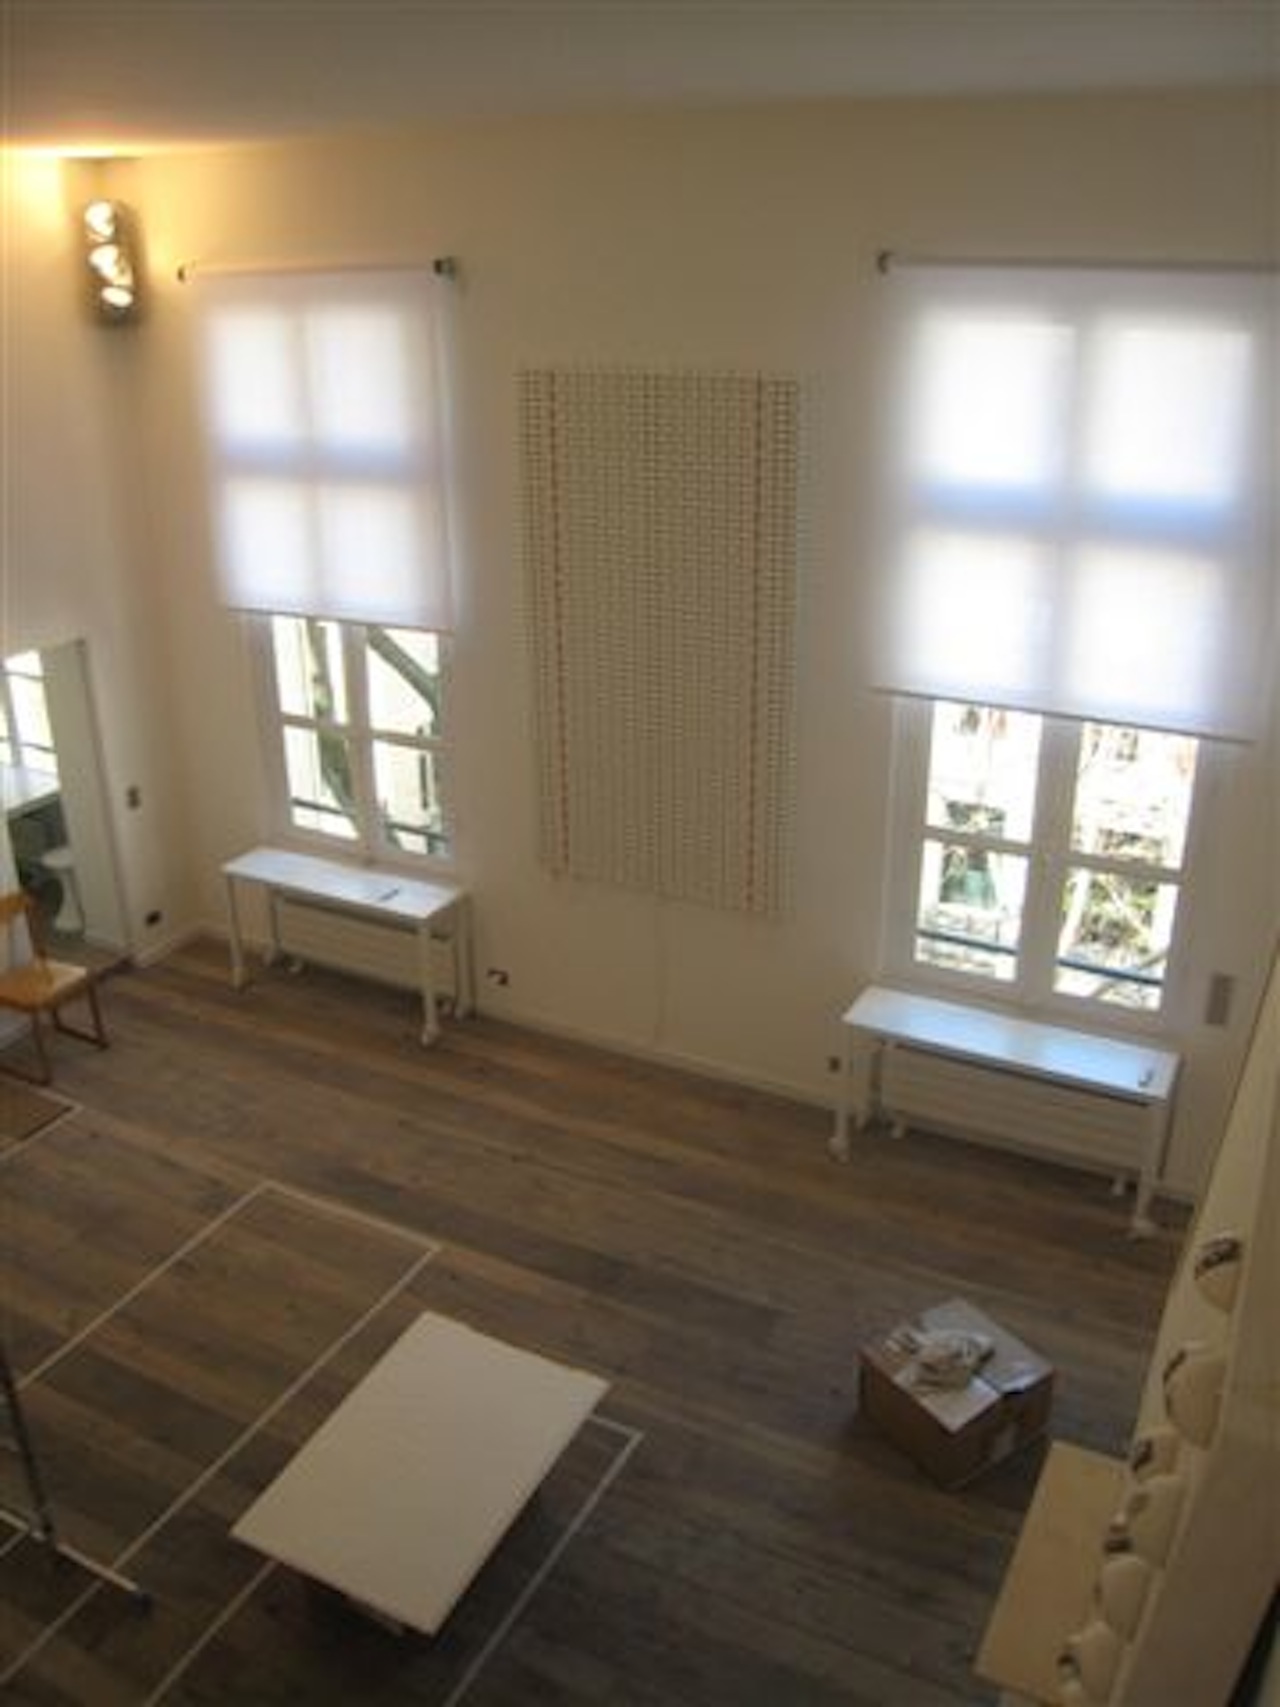 Biuso - Apartment, Saint-Germain-des-Prés